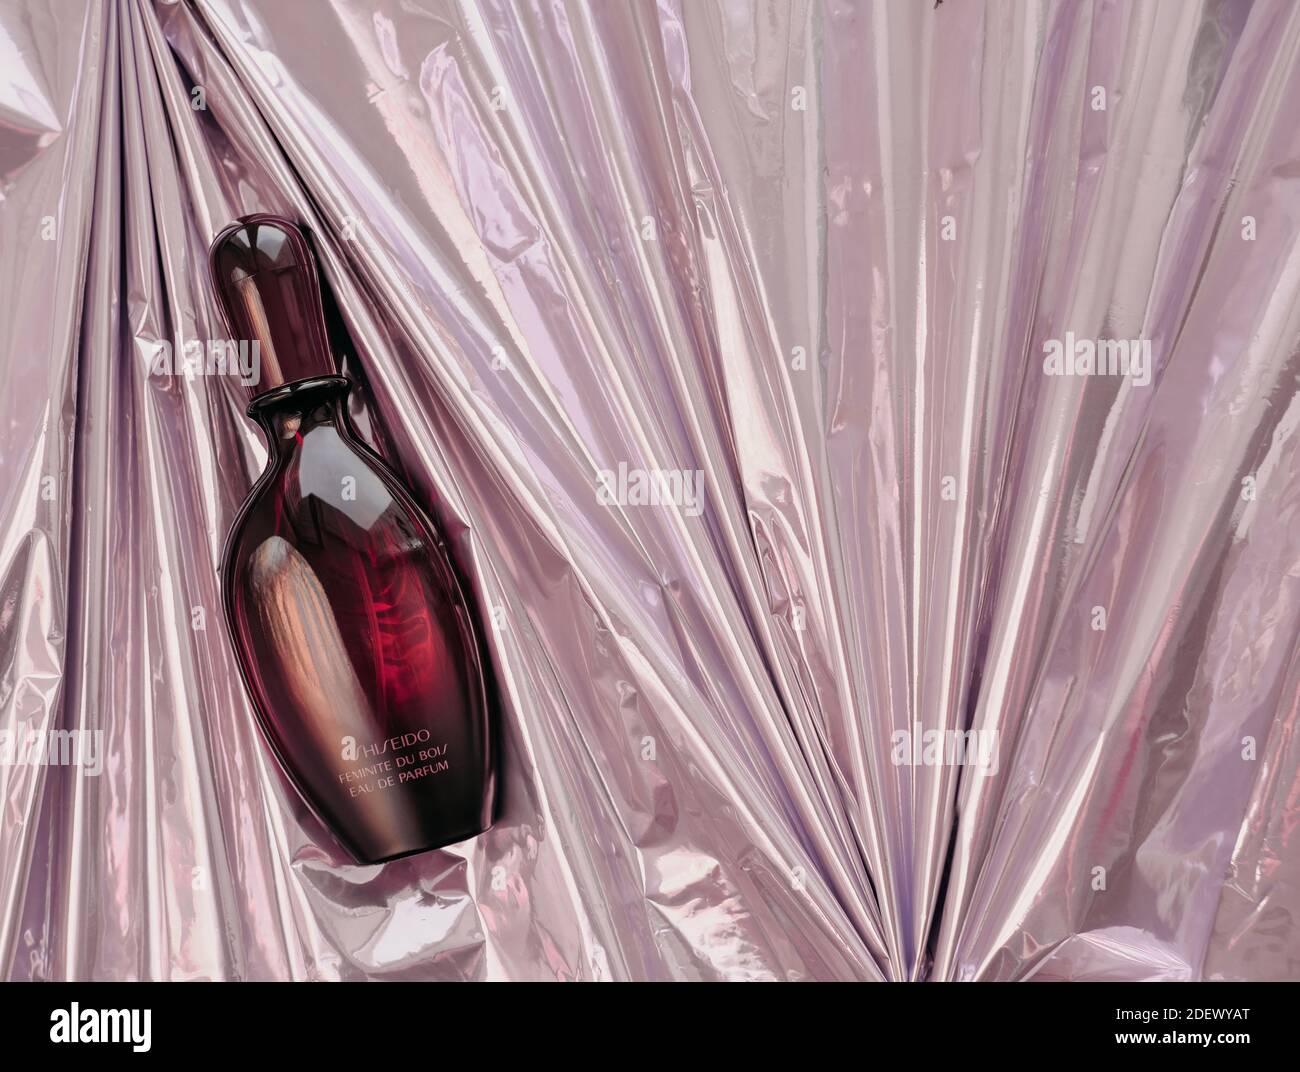 Eine Flasche Parfüm Shiseido Feminite du Bois auf einem pinken metallischen Faltenpapier. Weibliches orientalisches Parfüm für den Winter. Produktion eingestellt. Stockfoto